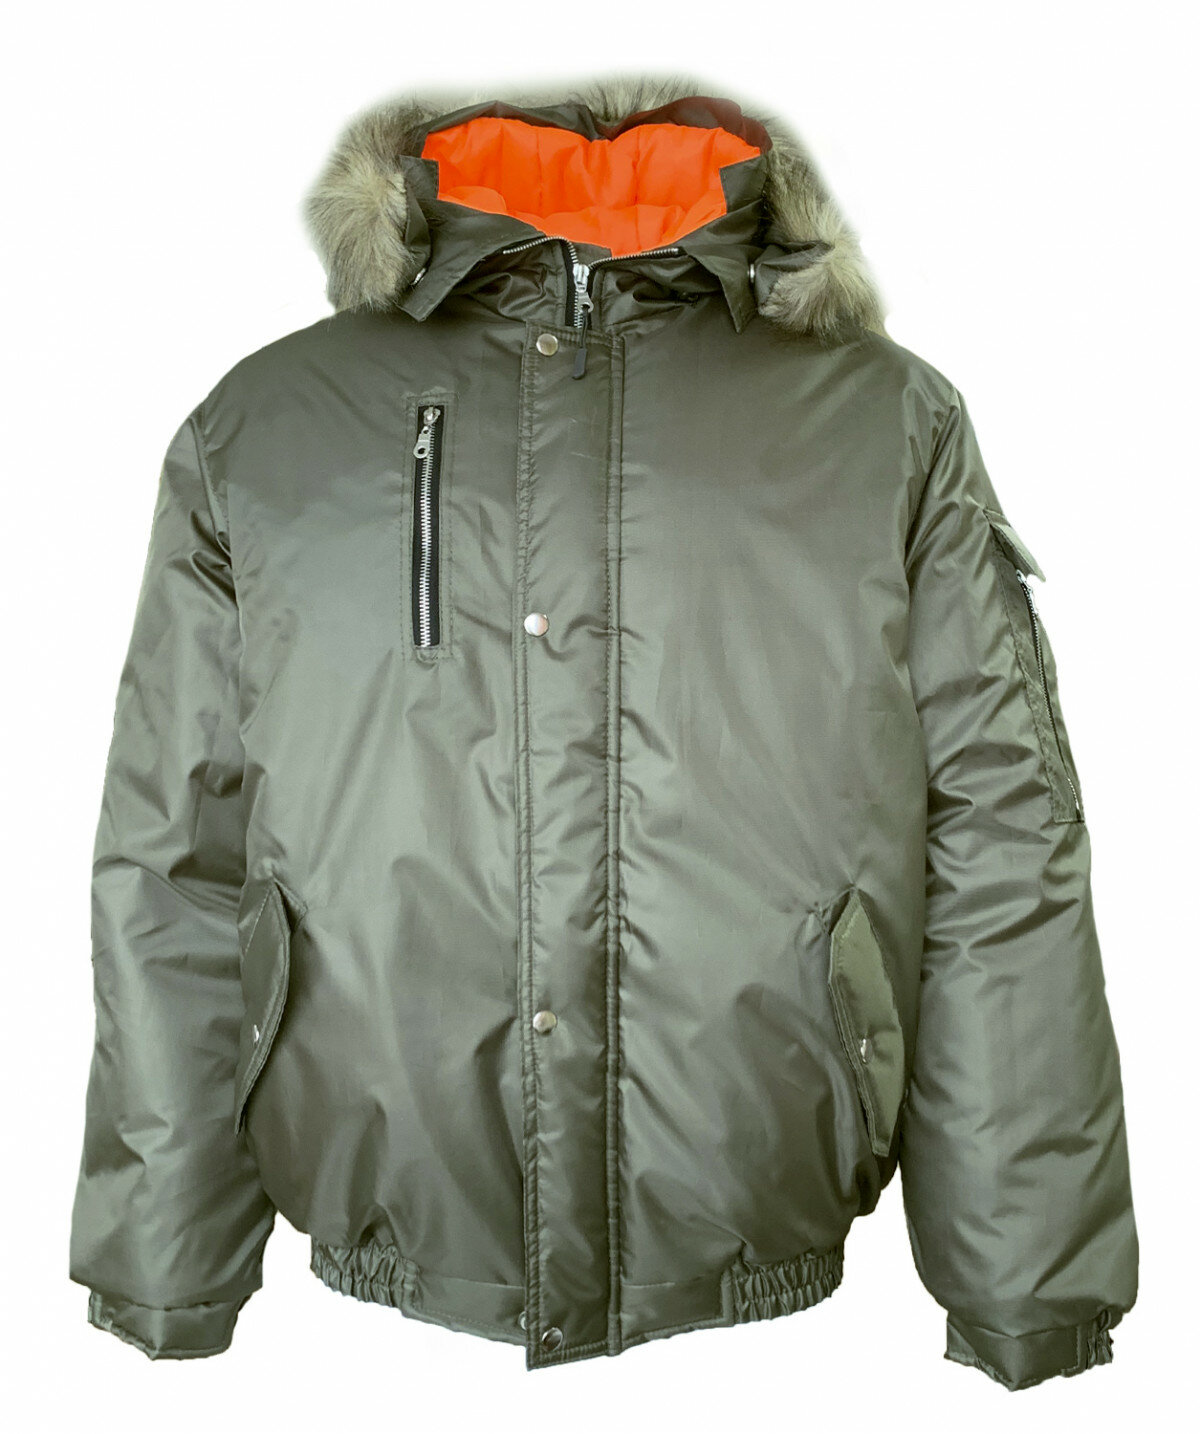 Куртка утепленная "Аляска-Анталекс", короткая, хаки, р. 52-54, рост 182-188. Размер:112-116. Рост:182-188